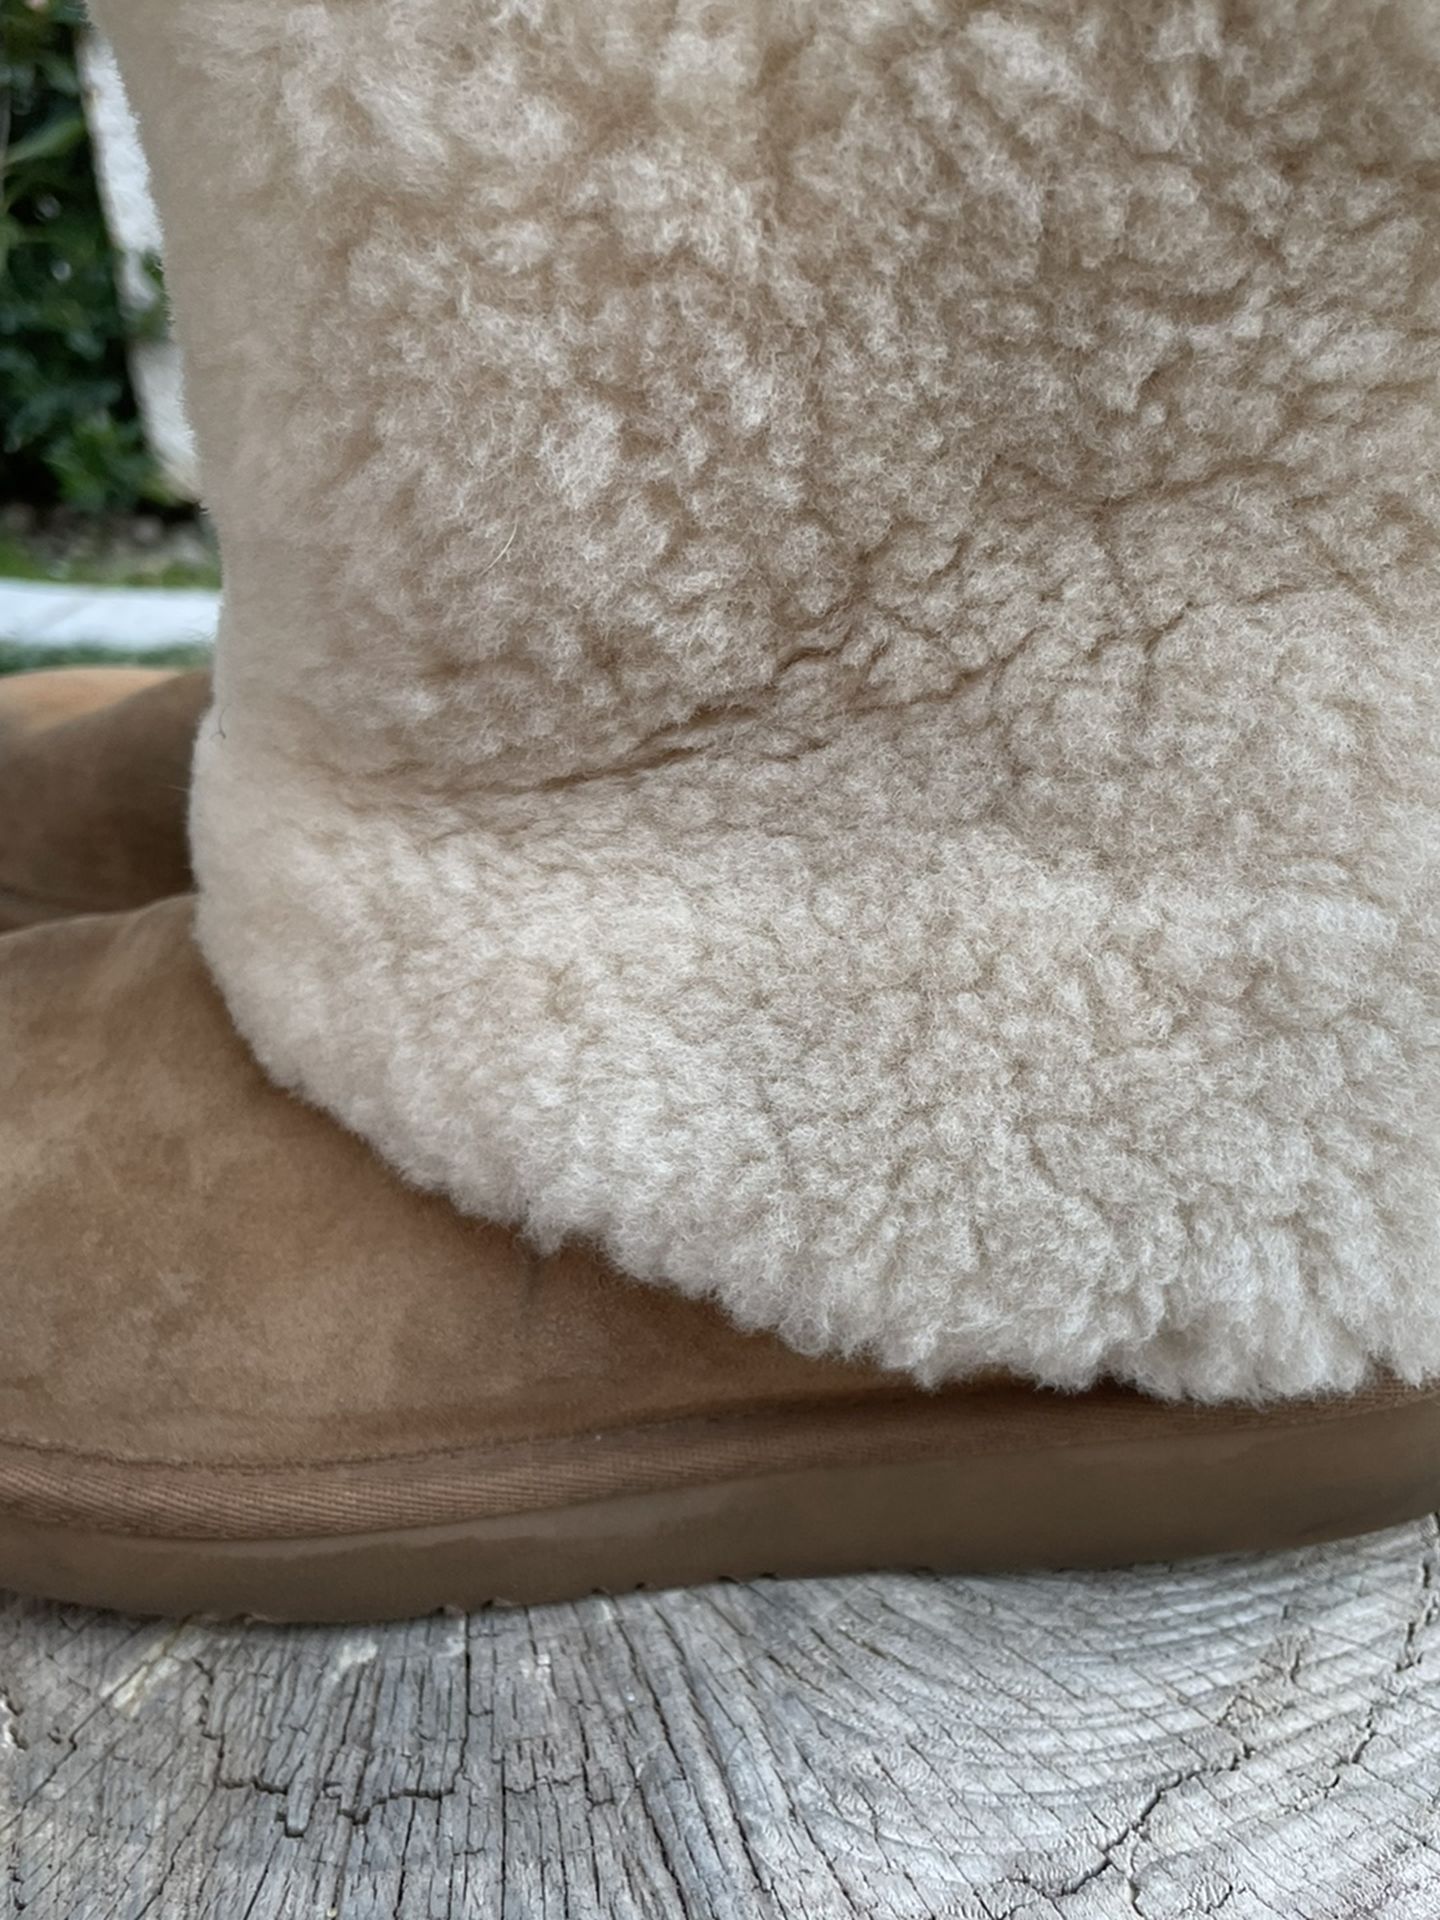 Ugg Australia Cream Suede Warm Boots Size 8 (39)